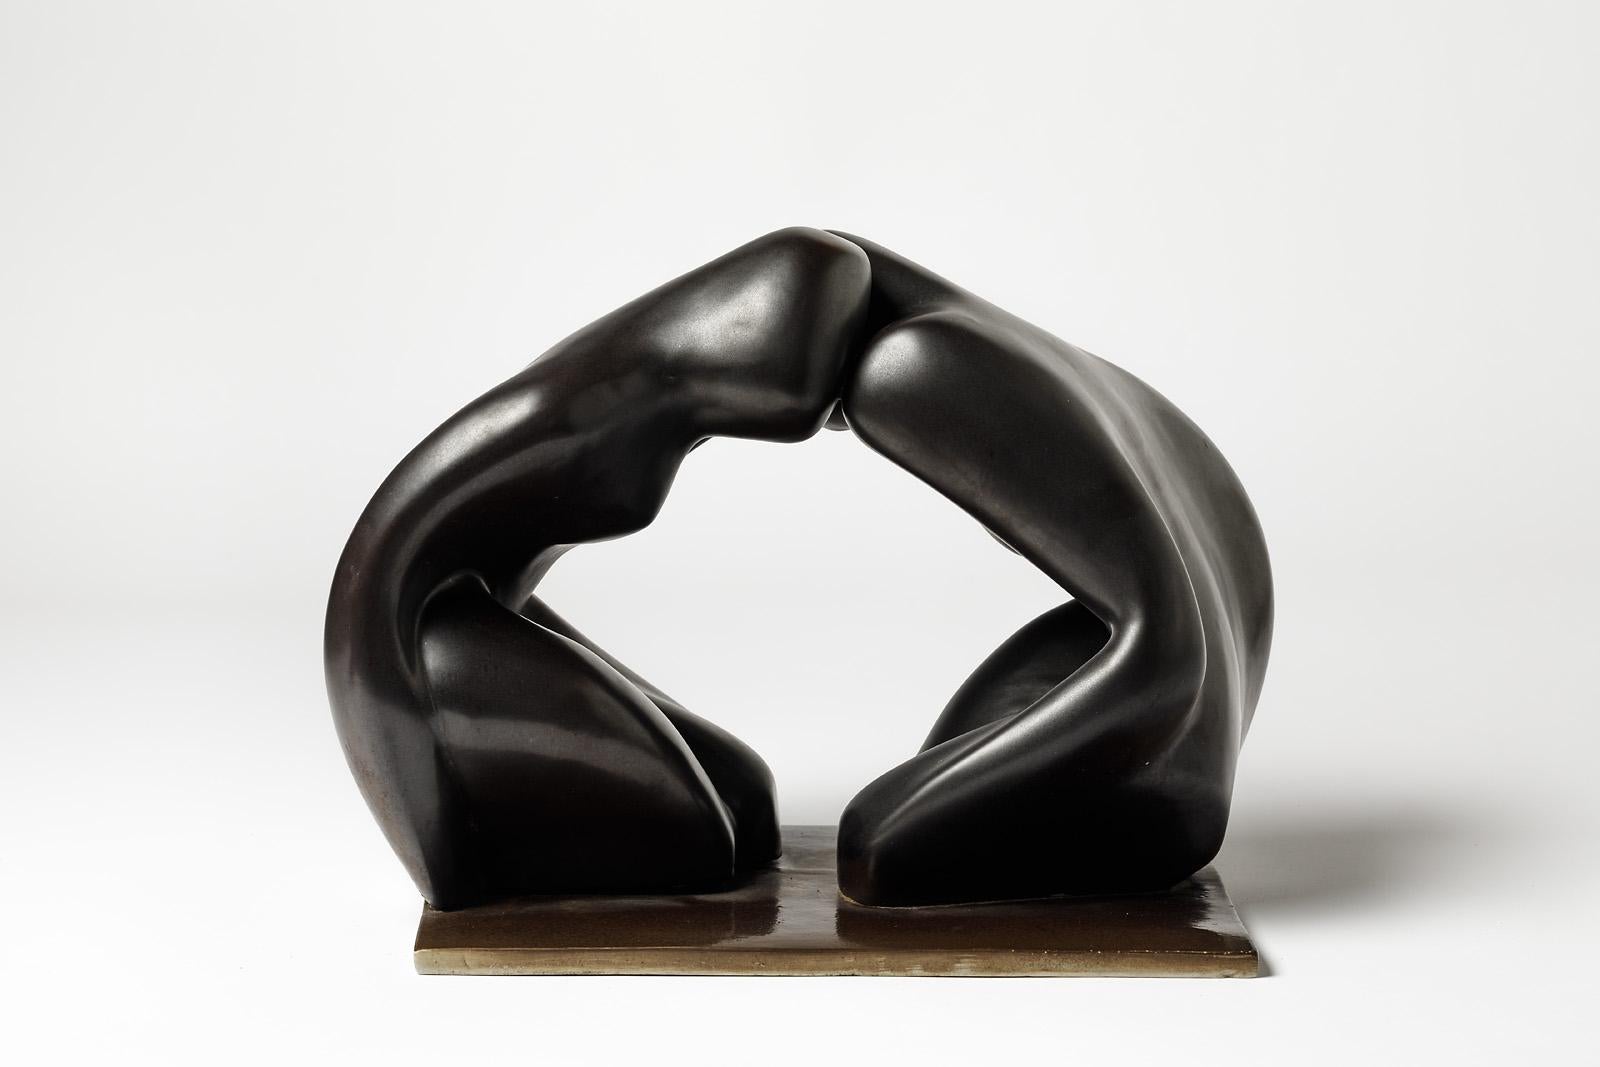 Une sculpture en céramique avec une décoration en glaçure noire de Tim Orr.
Conditions d'origine parfaites.
Signé sous la base,
vers 1970.